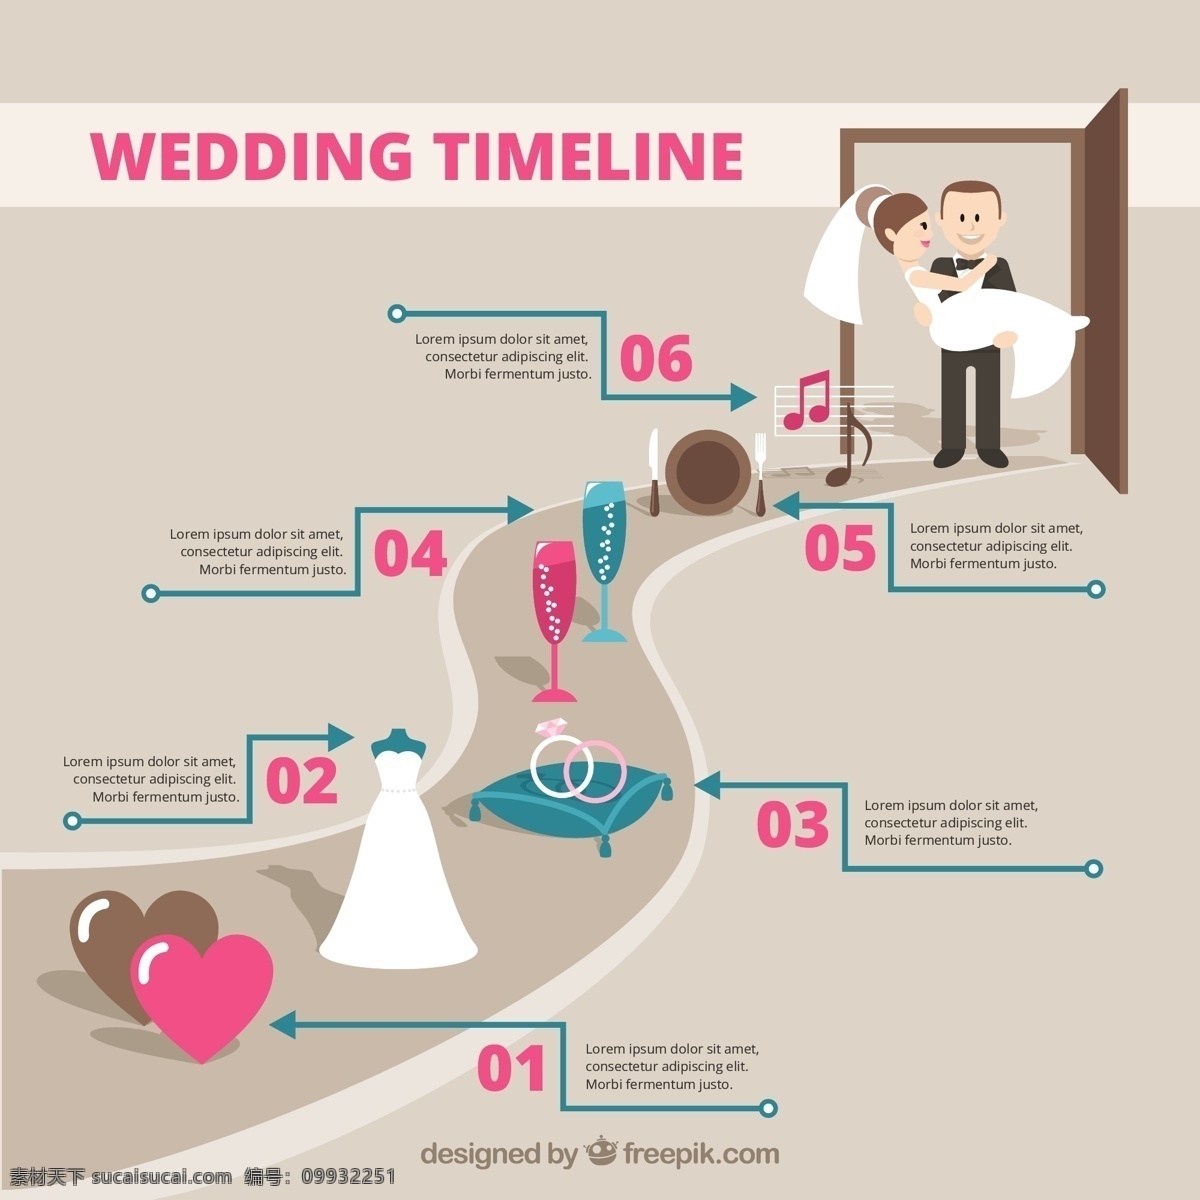 婚礼时间表 信息图表 婚礼 心 党的邀请 爱 邀请 蛋糕 时间轴 图表 图形 庆典 新娘 夫妇 事件 礼服 甜 装修 图 信息